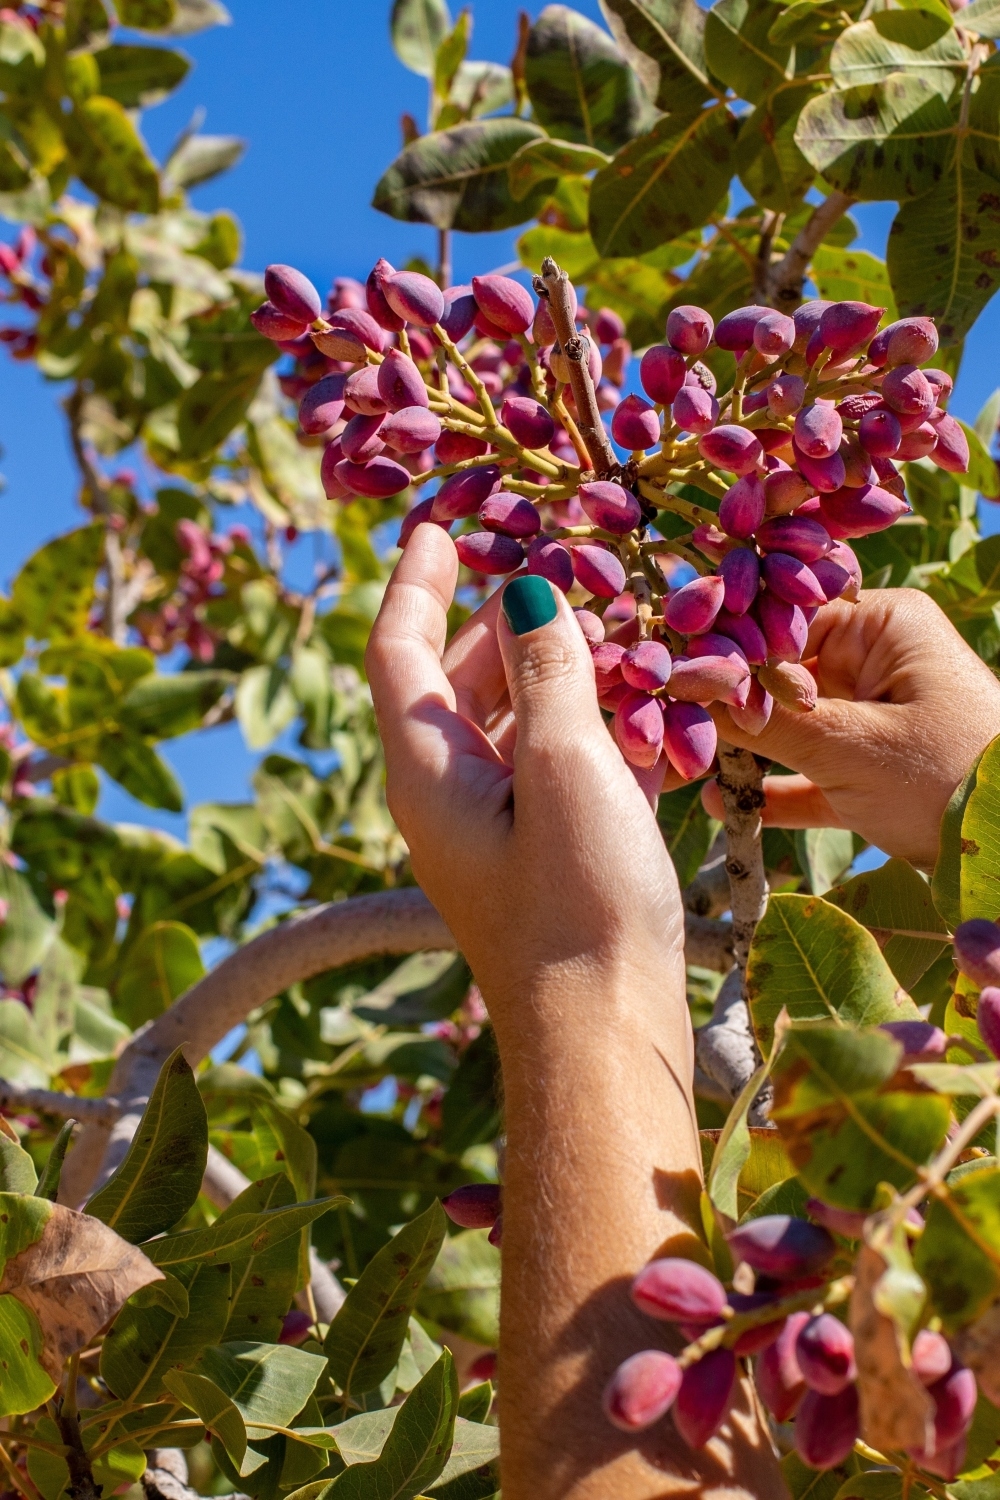 a woman picks pistachios